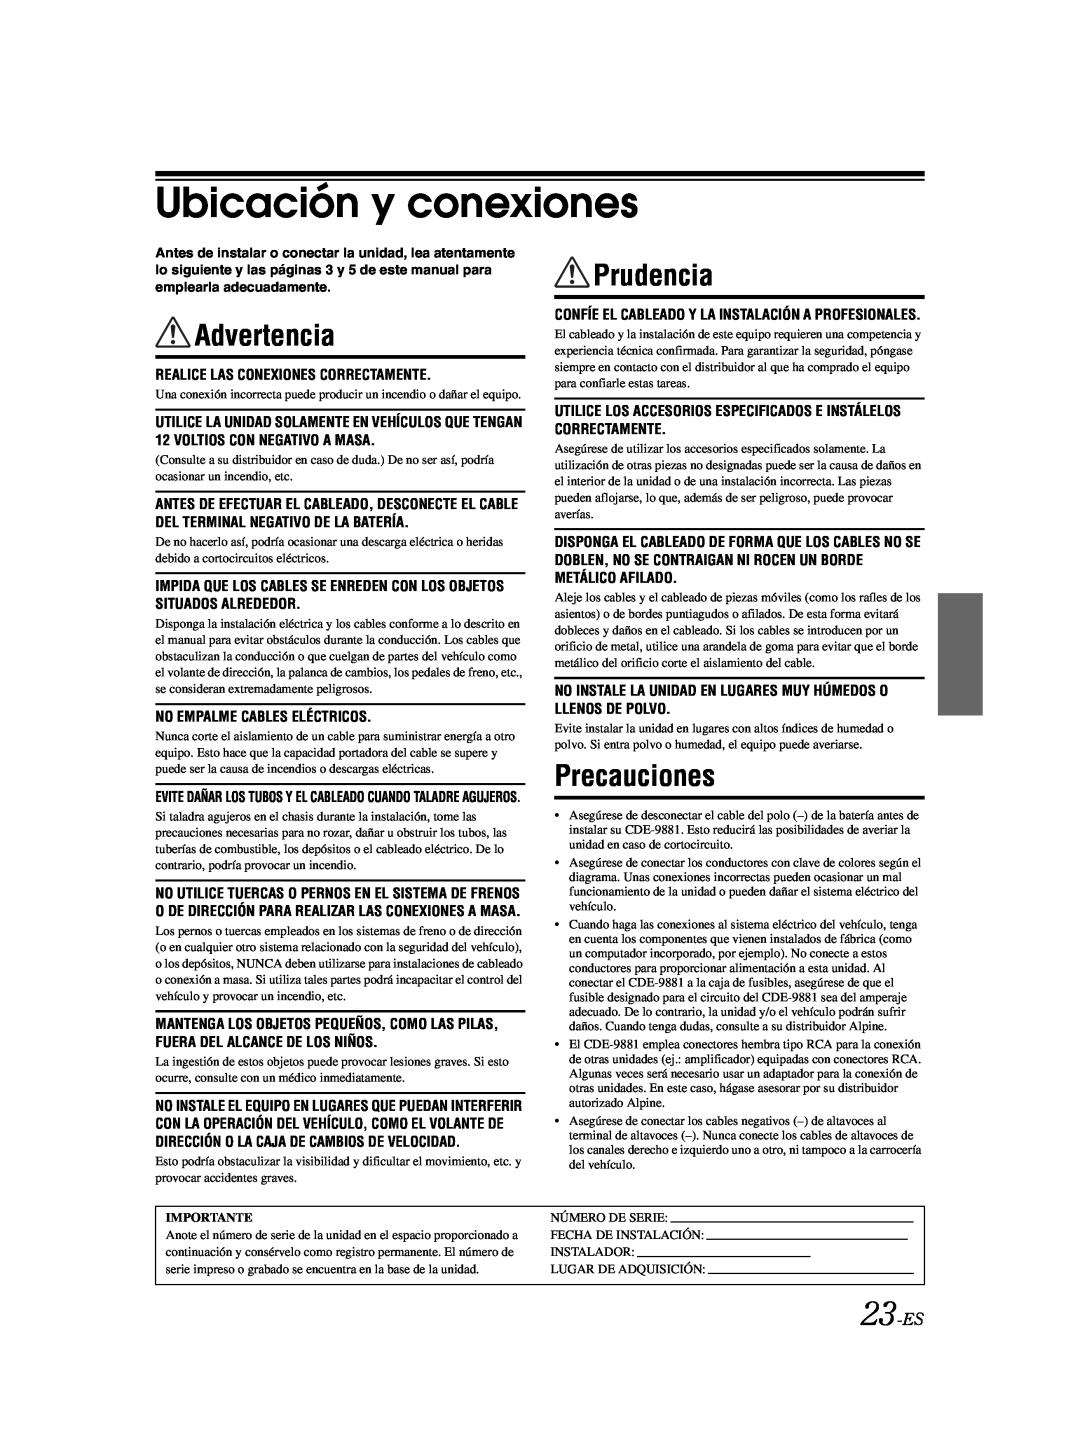 Alpine CDE-9881 owner manual Ubicación y conexiones, Advertencia, Prudencia, Precauciones, 23-ES 